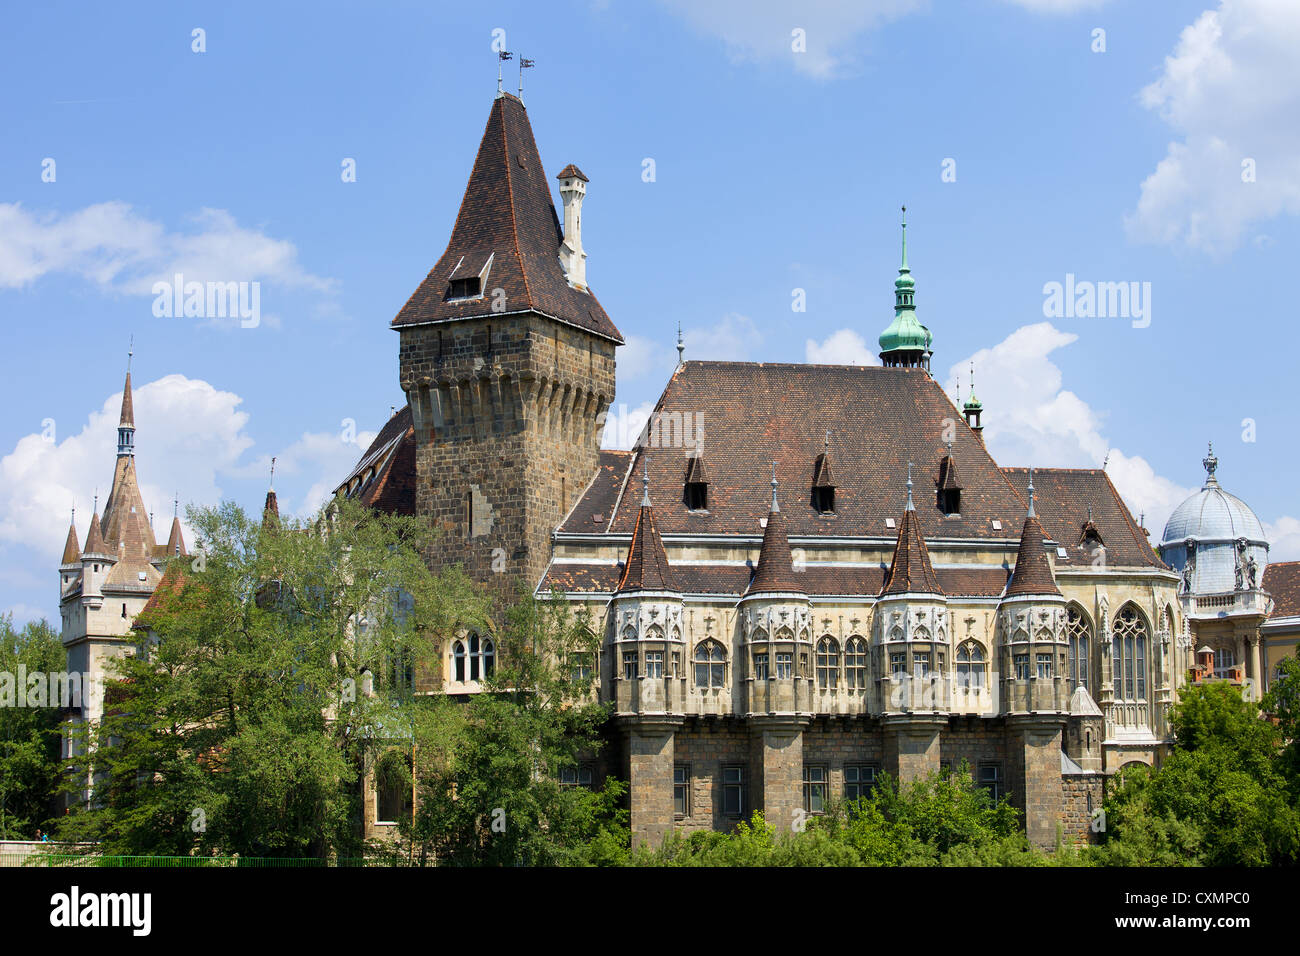 Die Burg von Vajdahunyad (ungarisch: vajdahunyad Vara) in Budapest, Ungarn, gotischen Teil der Burg. Stockfoto